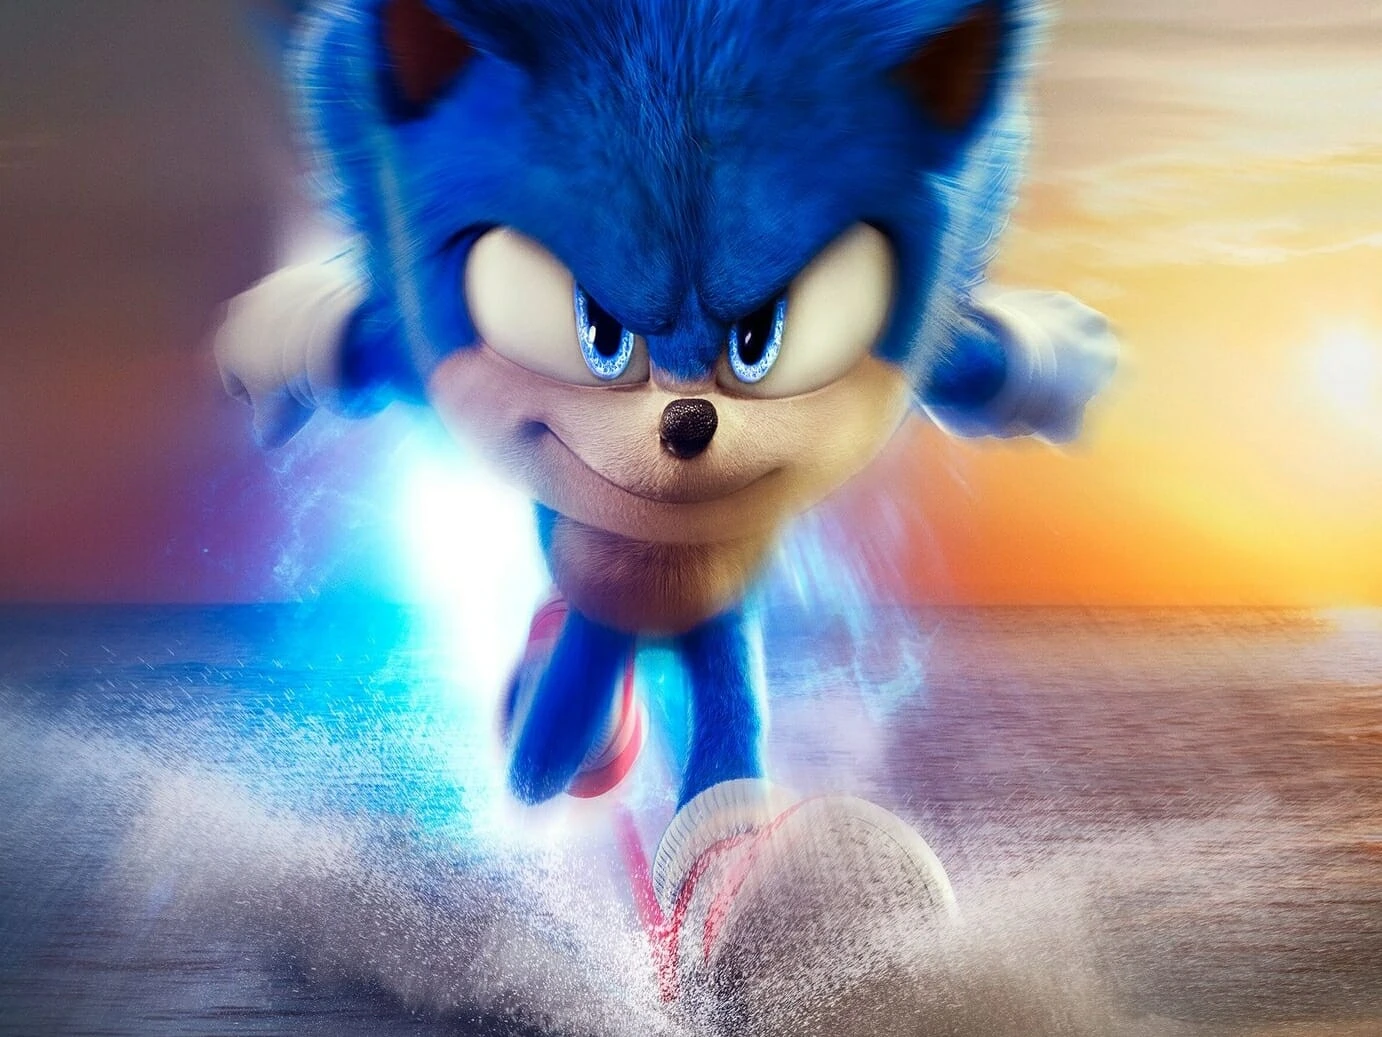 Sonic 2 quebra recorde de bilheteria para um filme de videogame